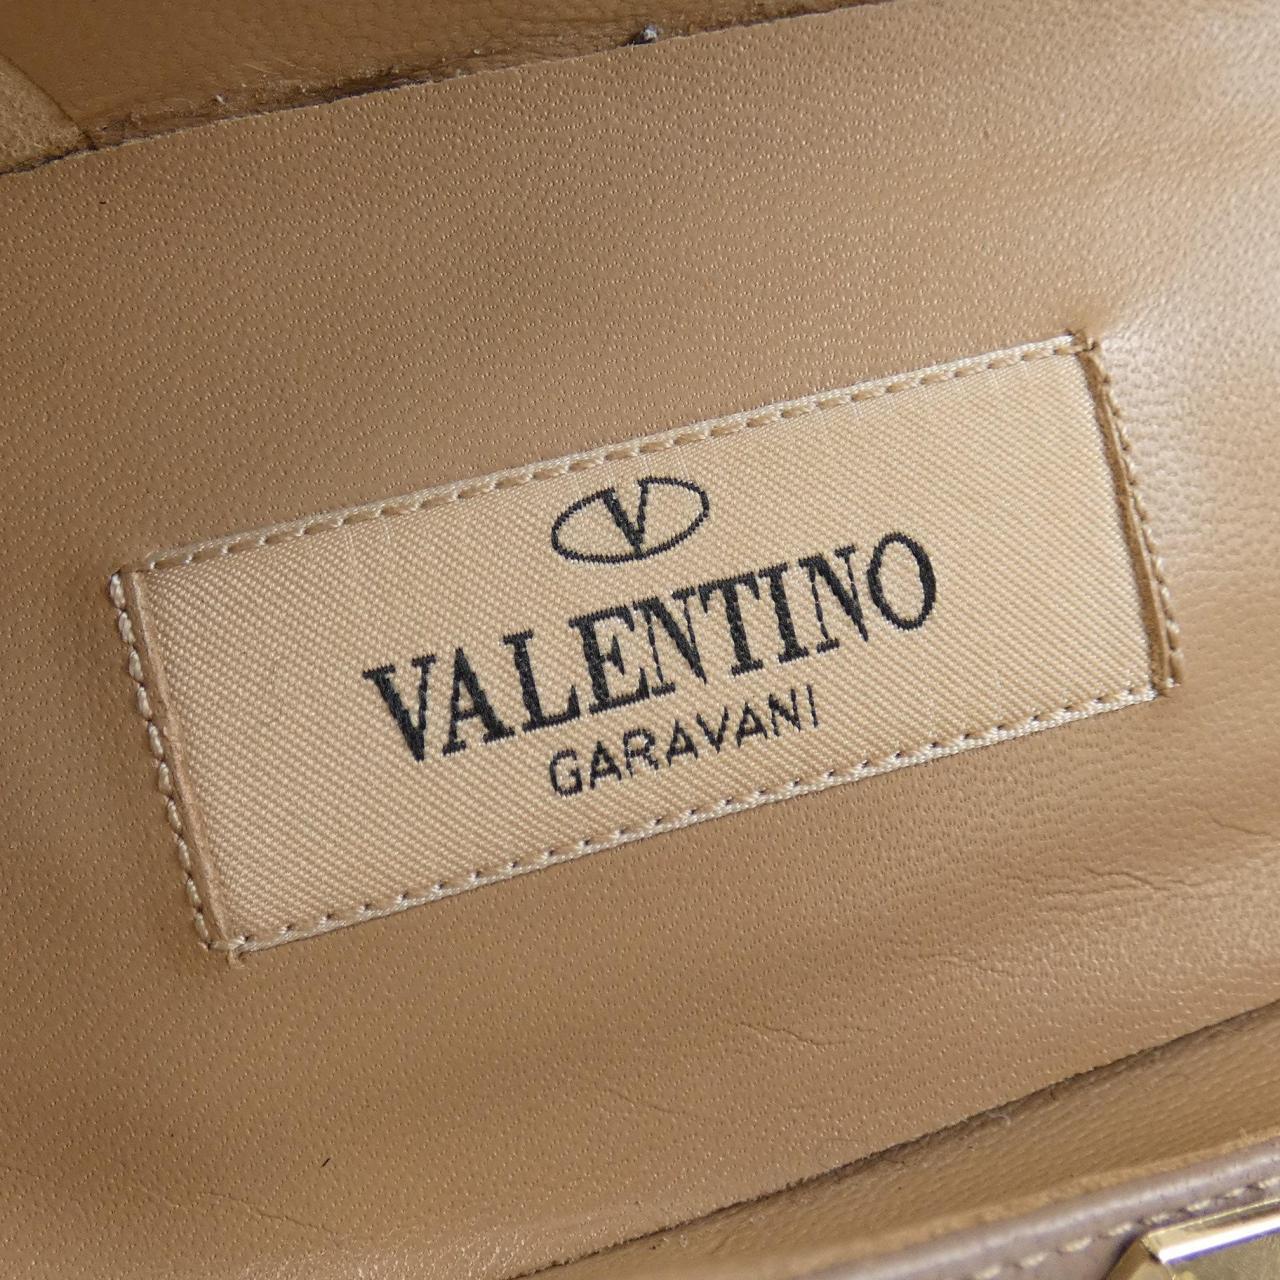 瓦倫蒂諾· VALENTINO GARAVANI鞋履